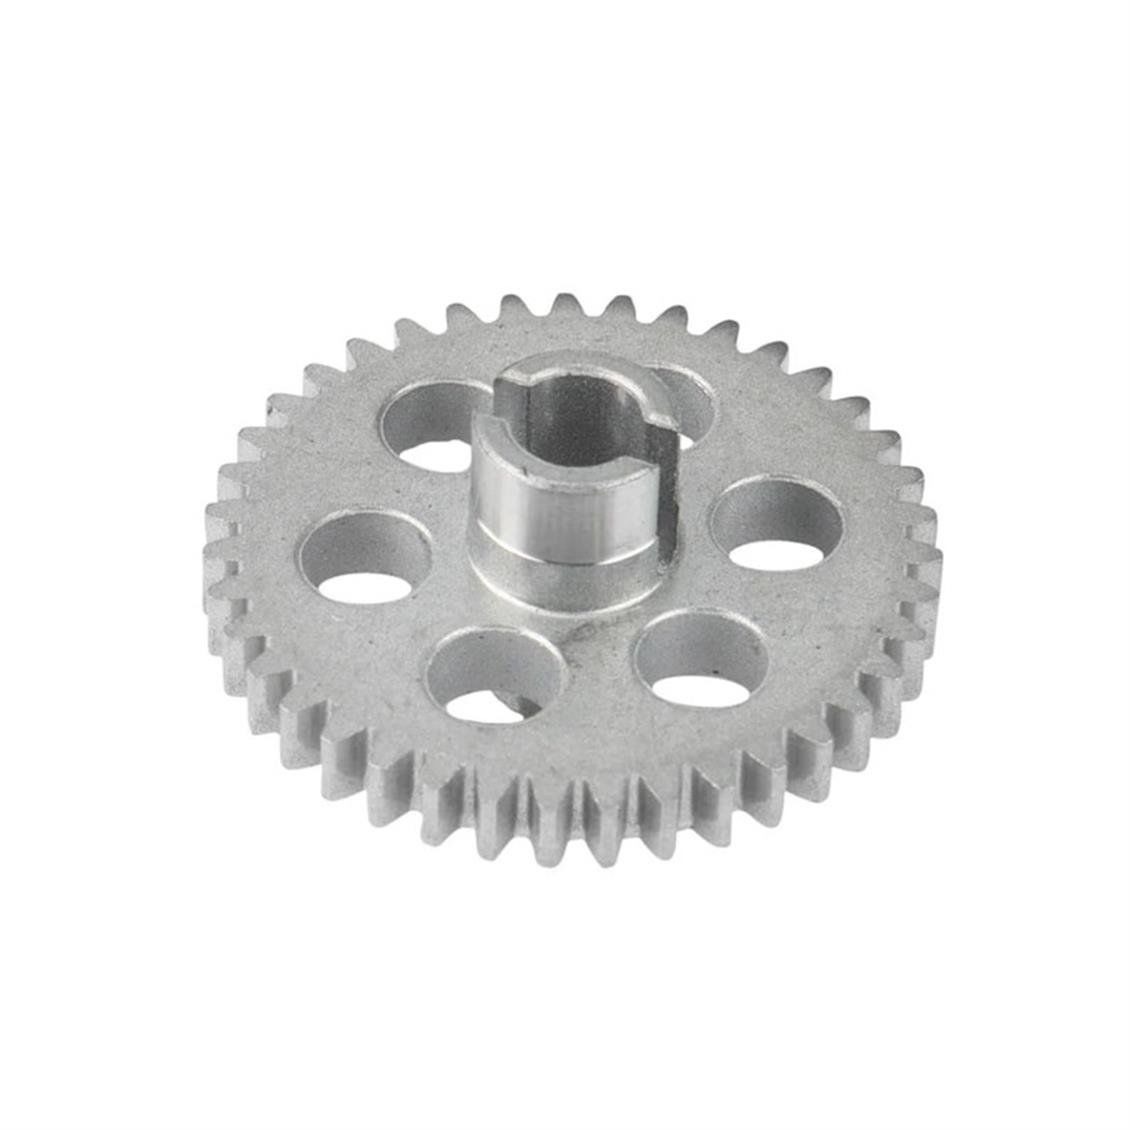 Remo G4610 gear sintered hardened steel gears(1pcs), Model Araç Yedek Parçası